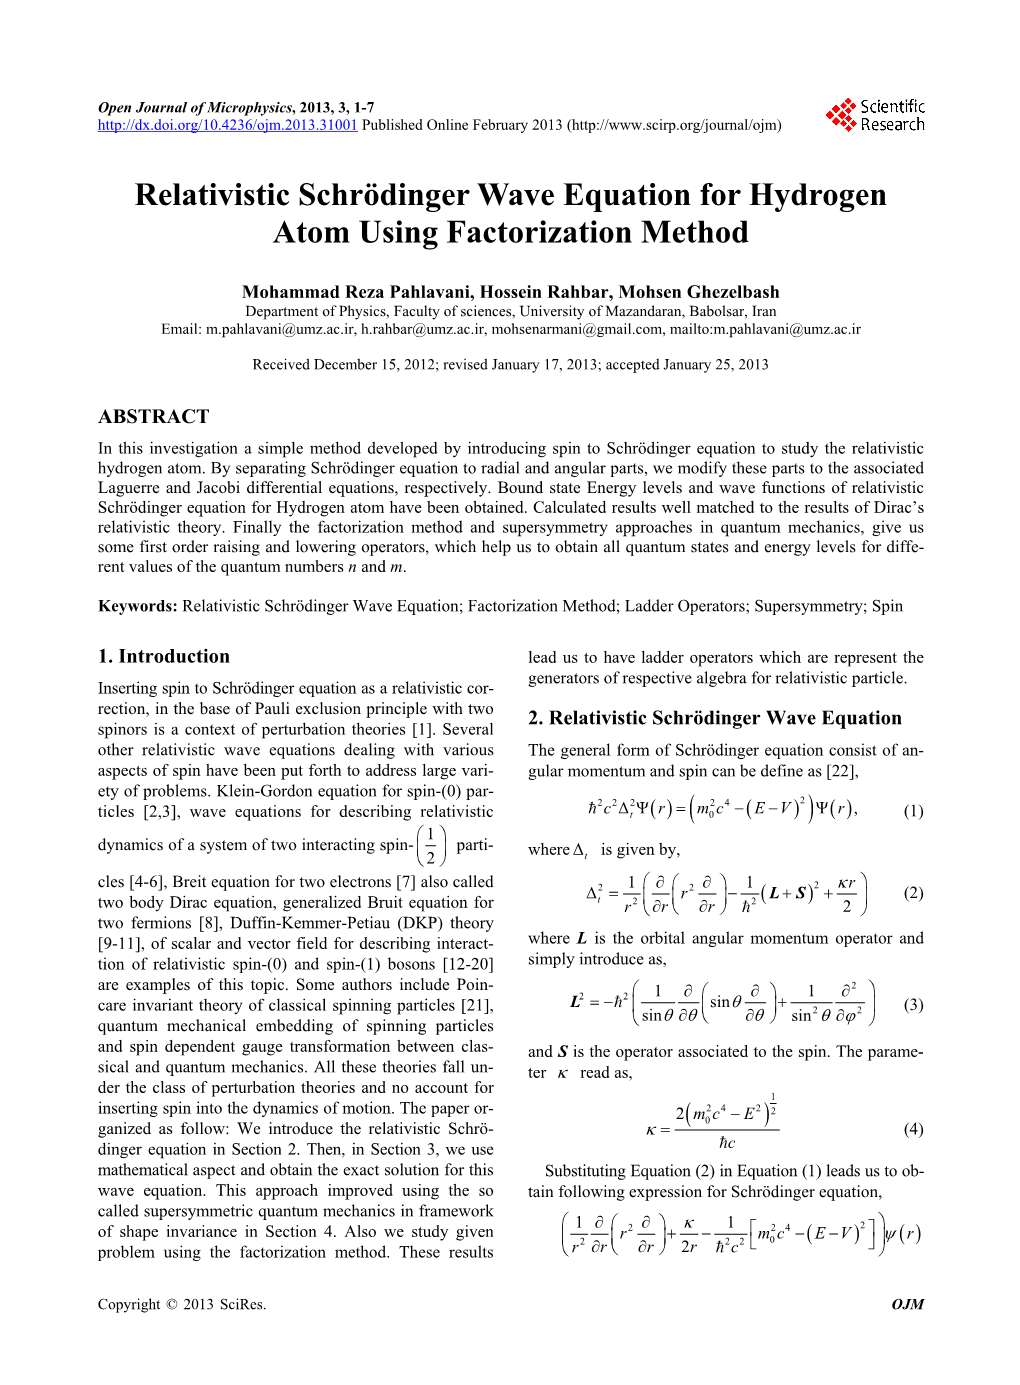 Relativistic Schrödinger Wave Equation for Hydrogen Atom Using Factorization Method